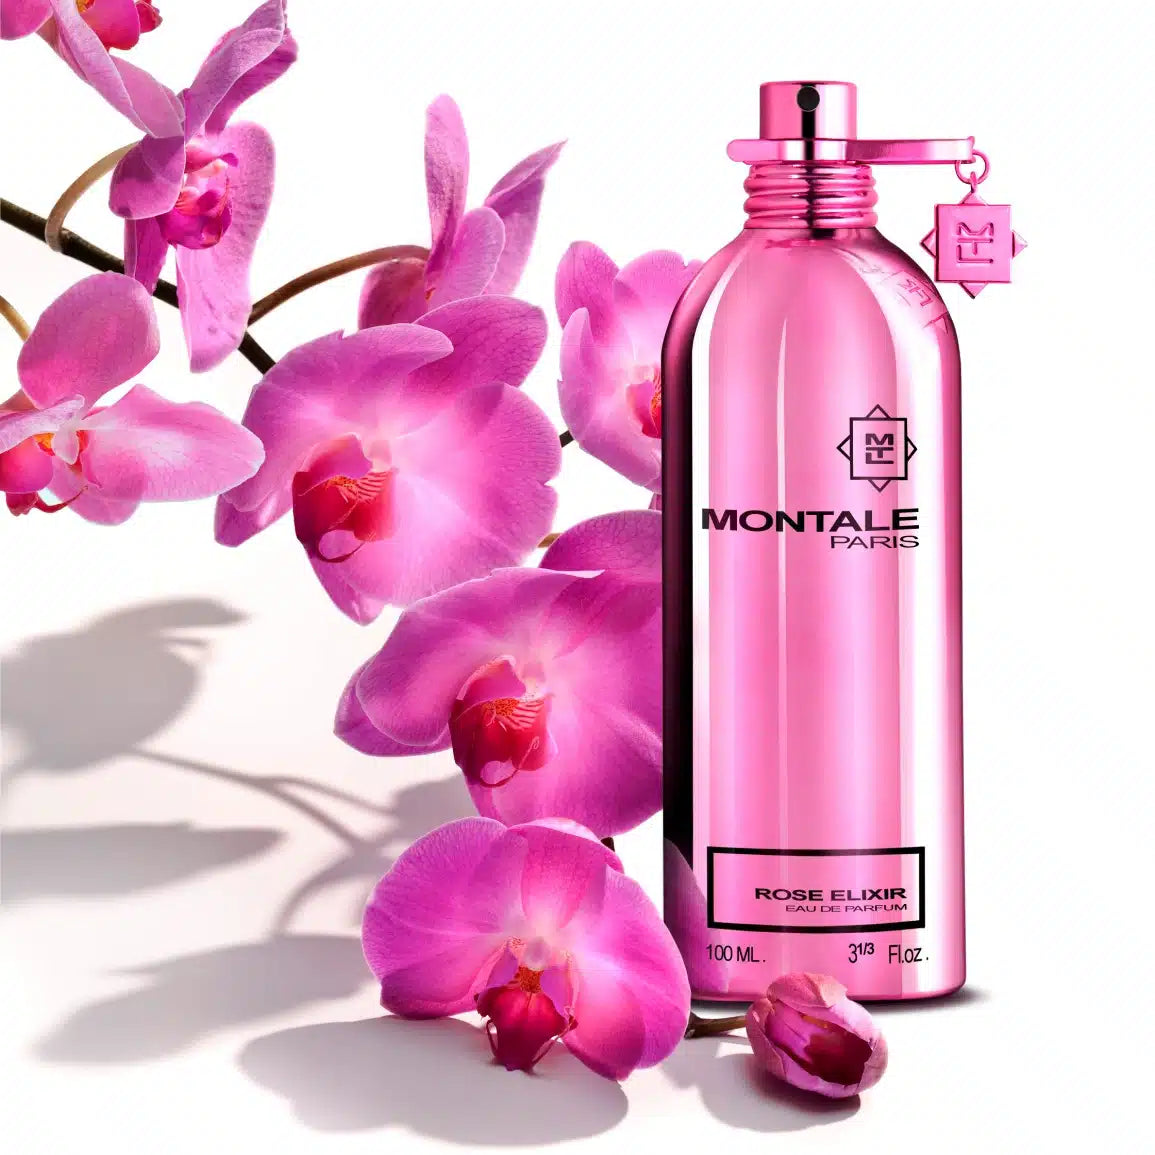 Montale Paris Rose Elixir Eau De Parfum 100 ML